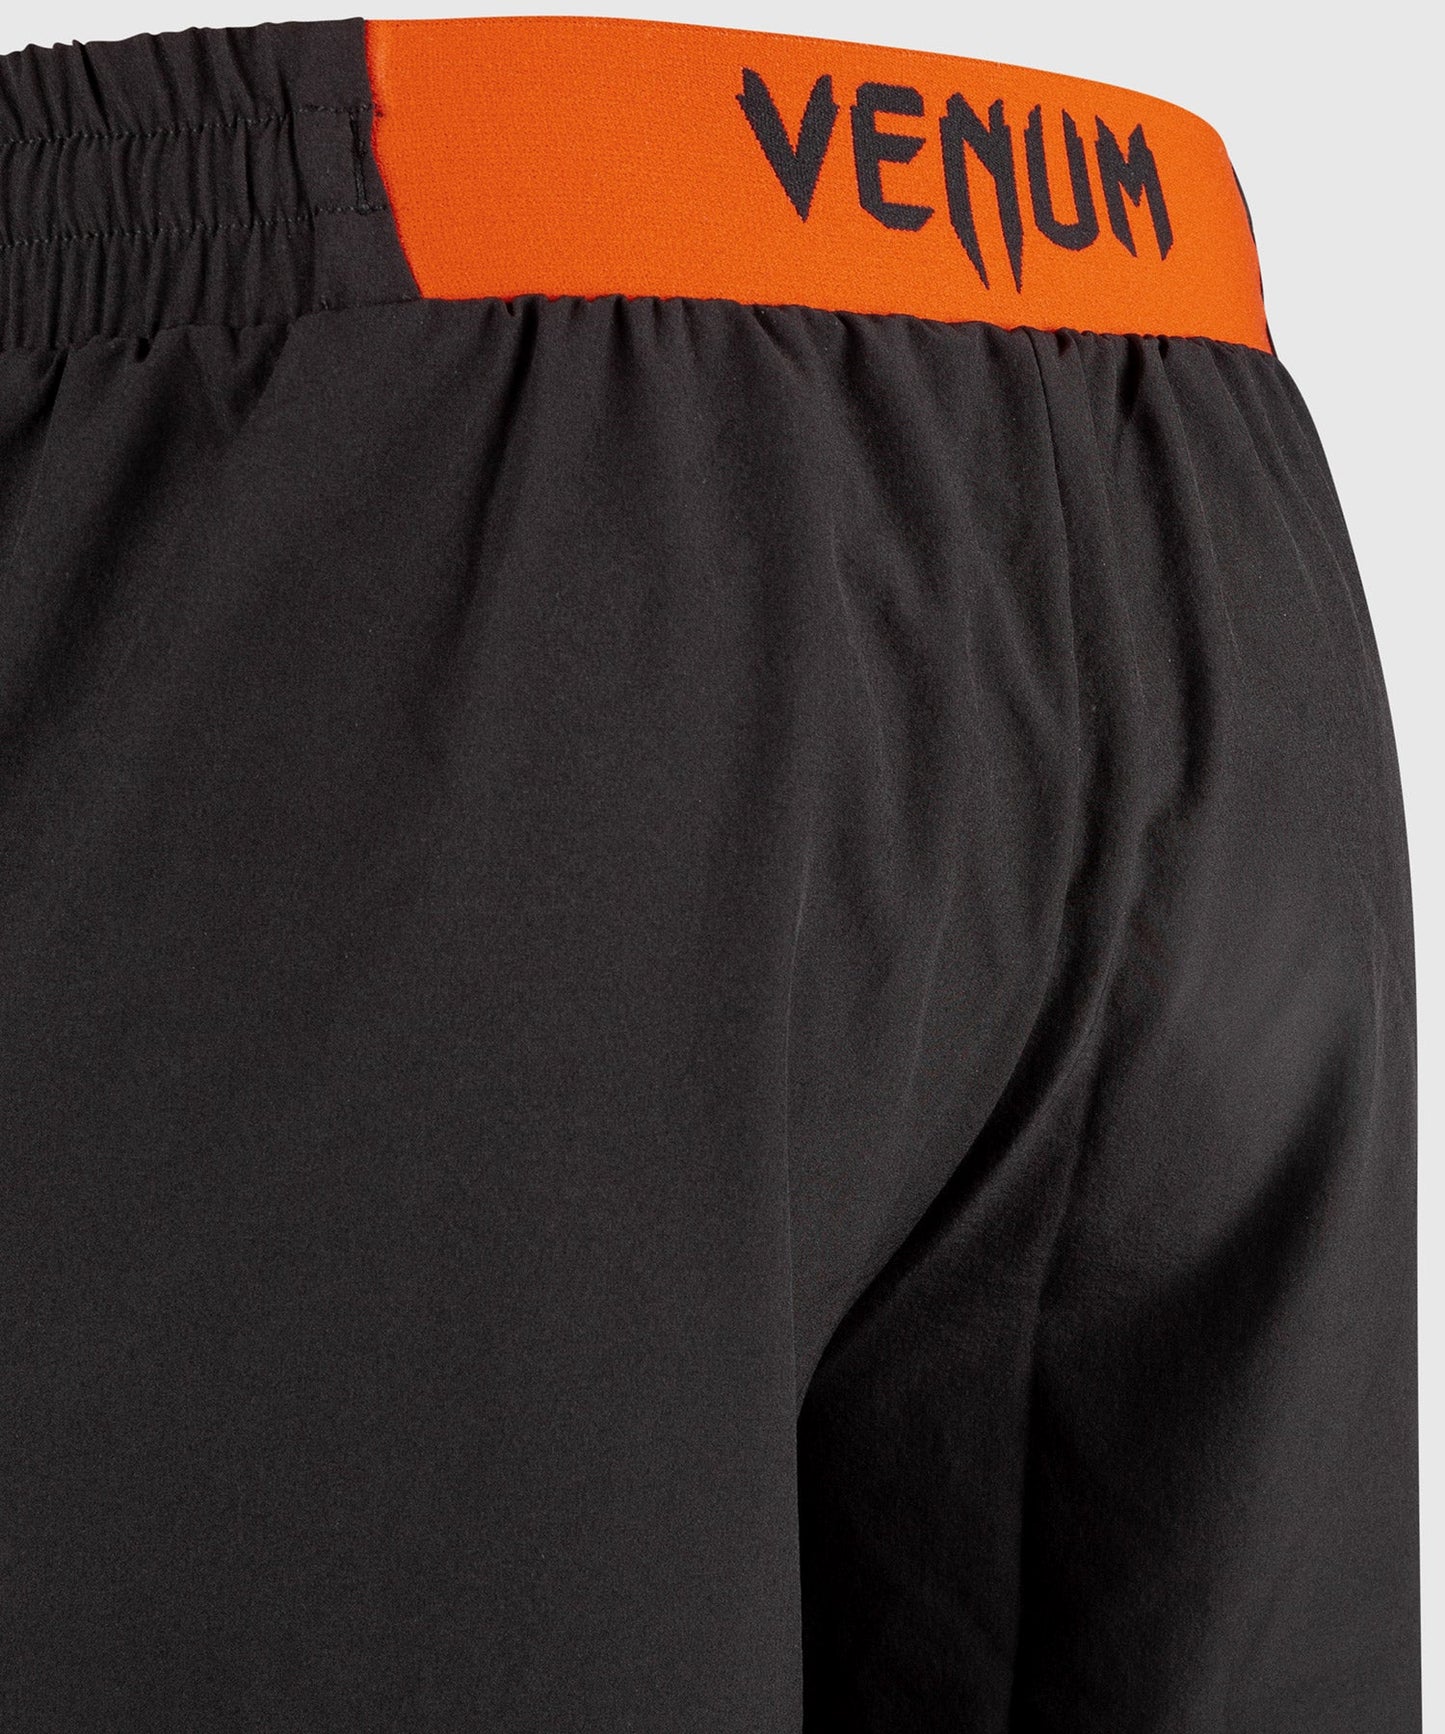 Venum Classic Training Shorts - Black/Red